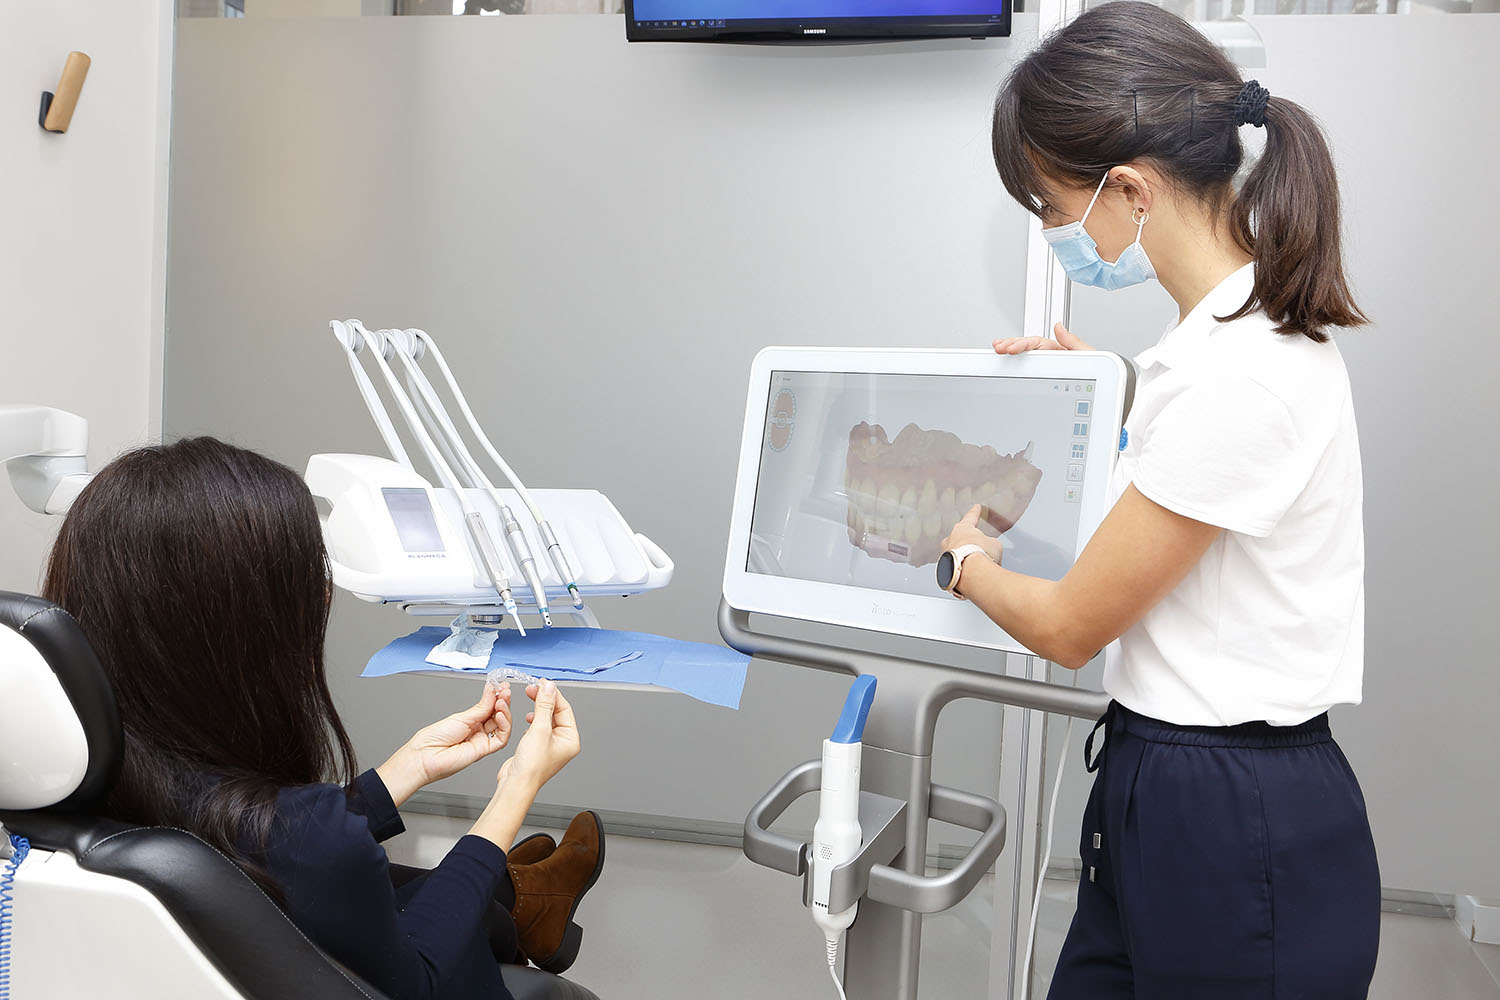 En Dentieder realizamos la ortodoncia invisible invisaling, ven a conocernos con la primera visita gratis